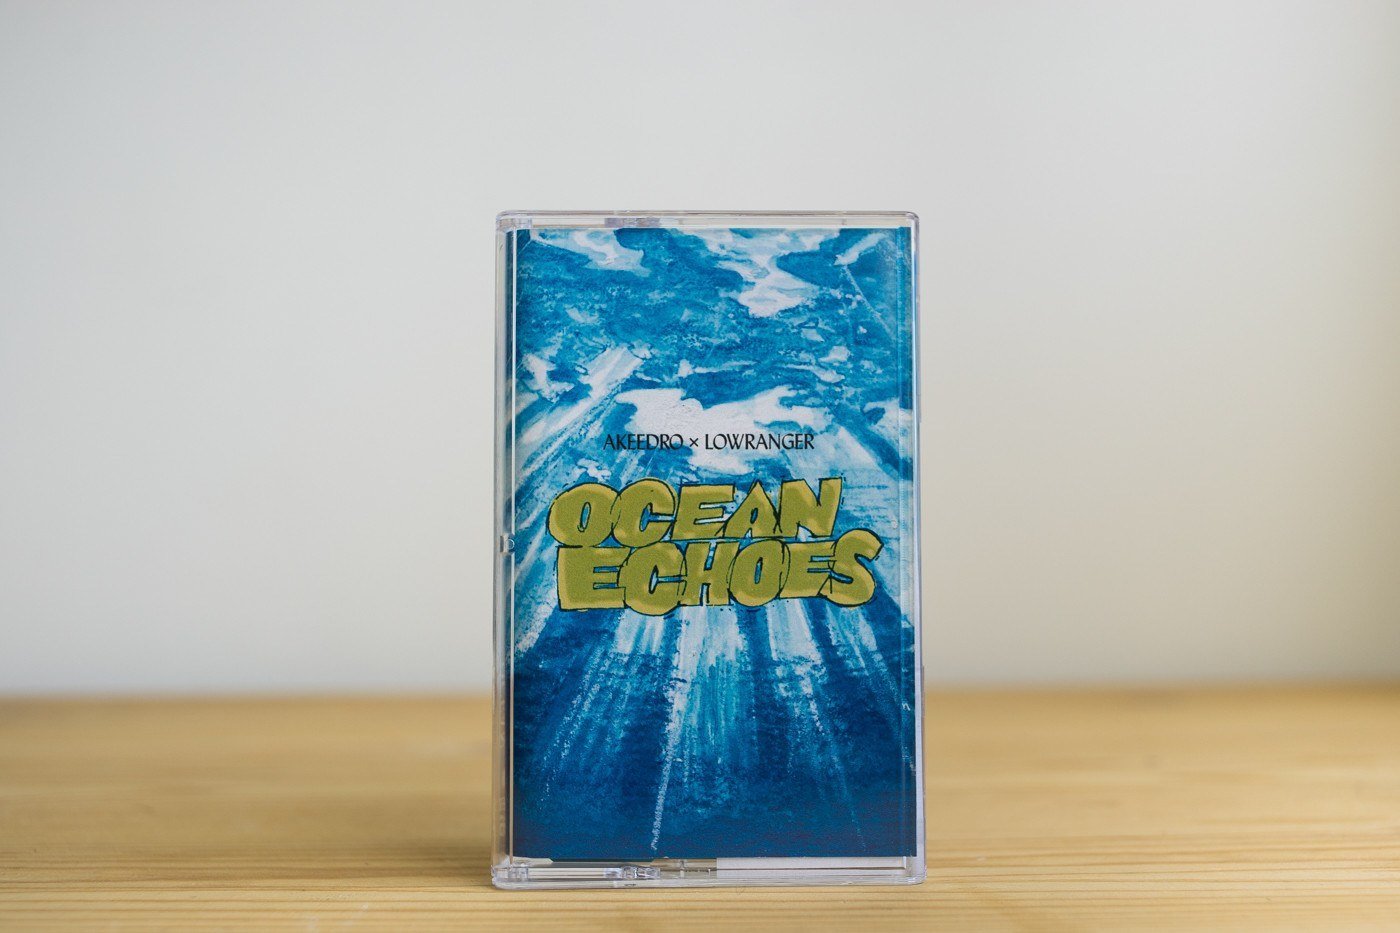 Akeedro x Lowranger - Ocean Echoes - Inner Ocean Records